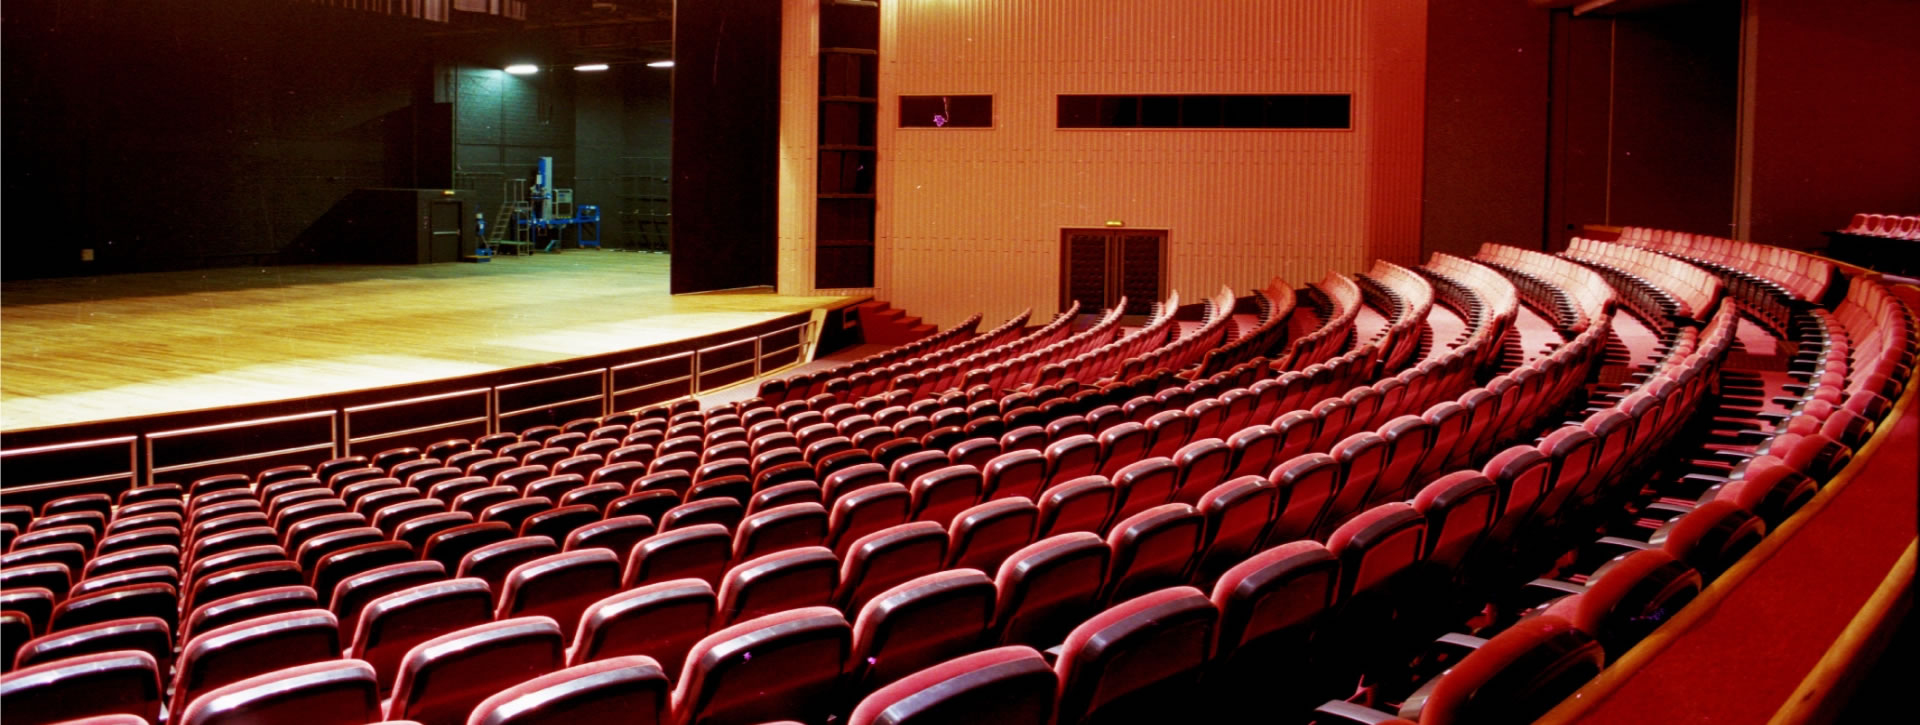 Centro de Eventos FIERGS - Teatro do SESI - Cidades Criativas